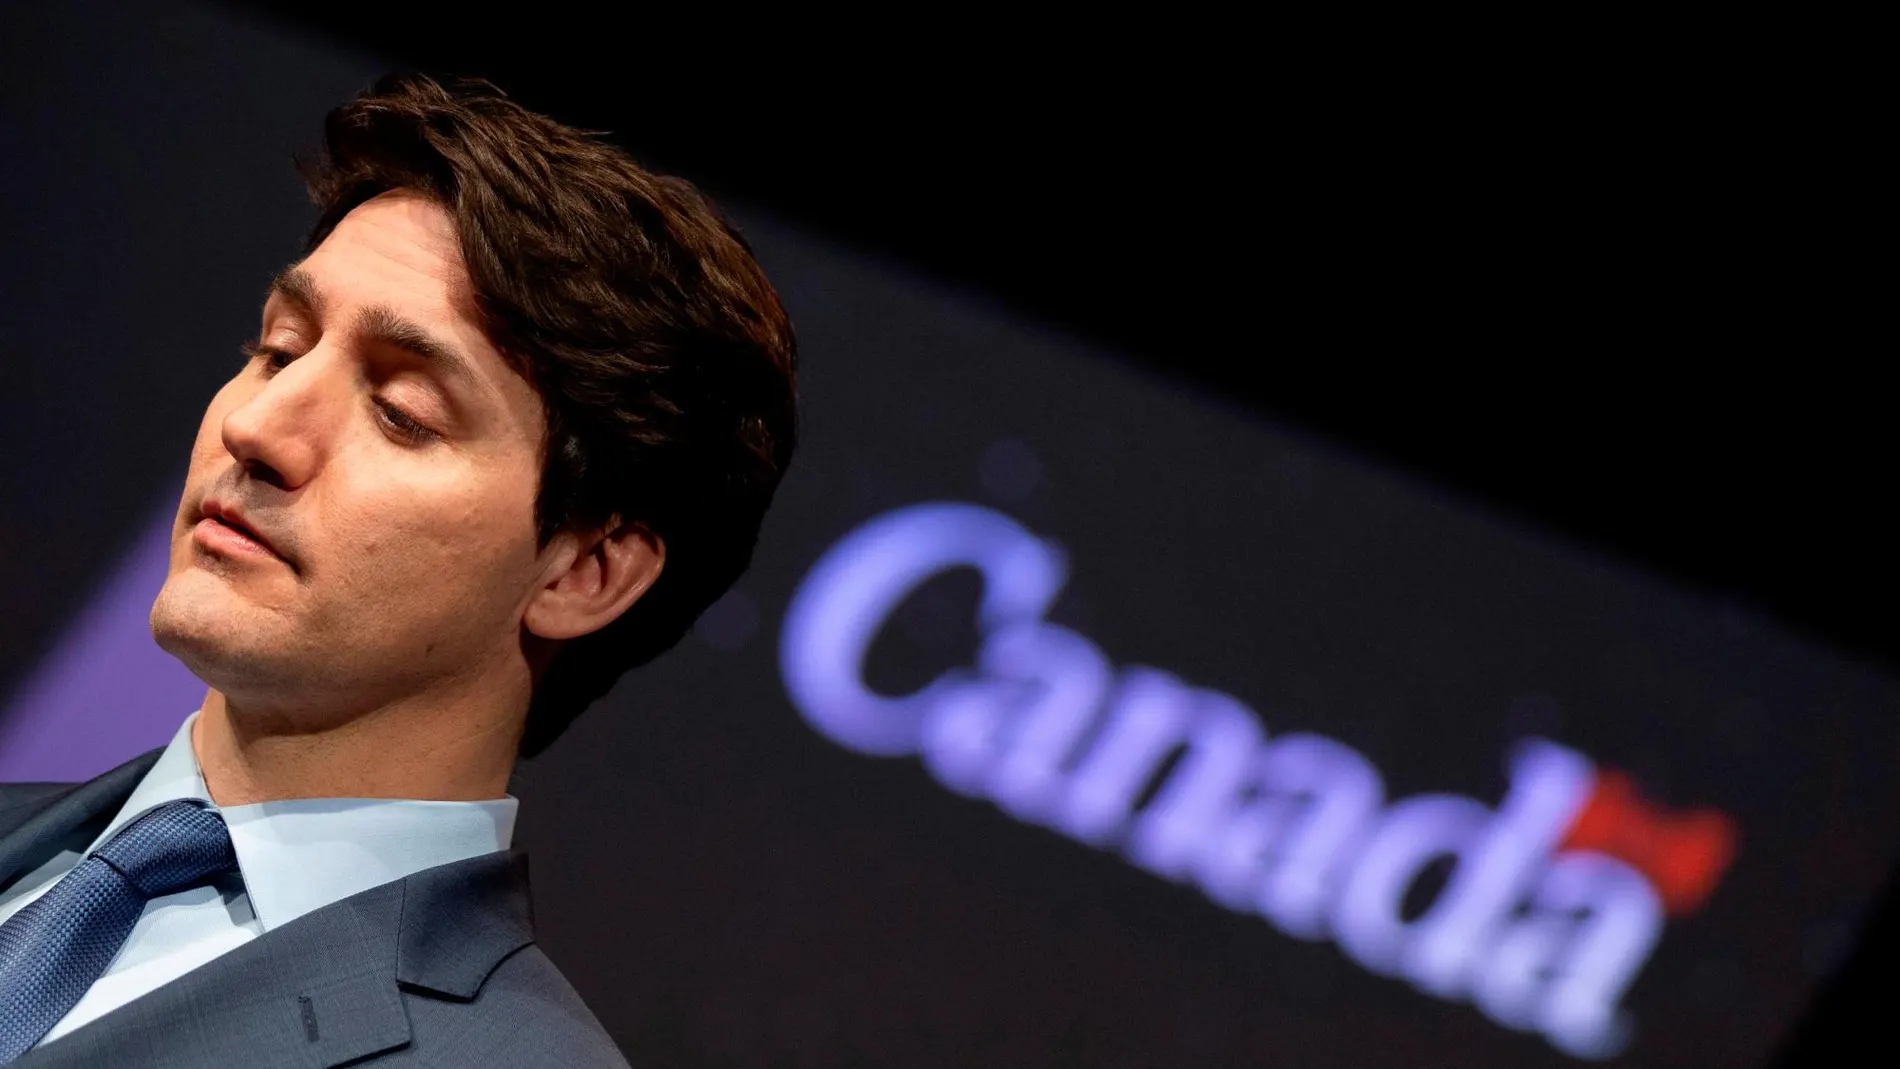 El primer ministro canadiense niega una mala praxis